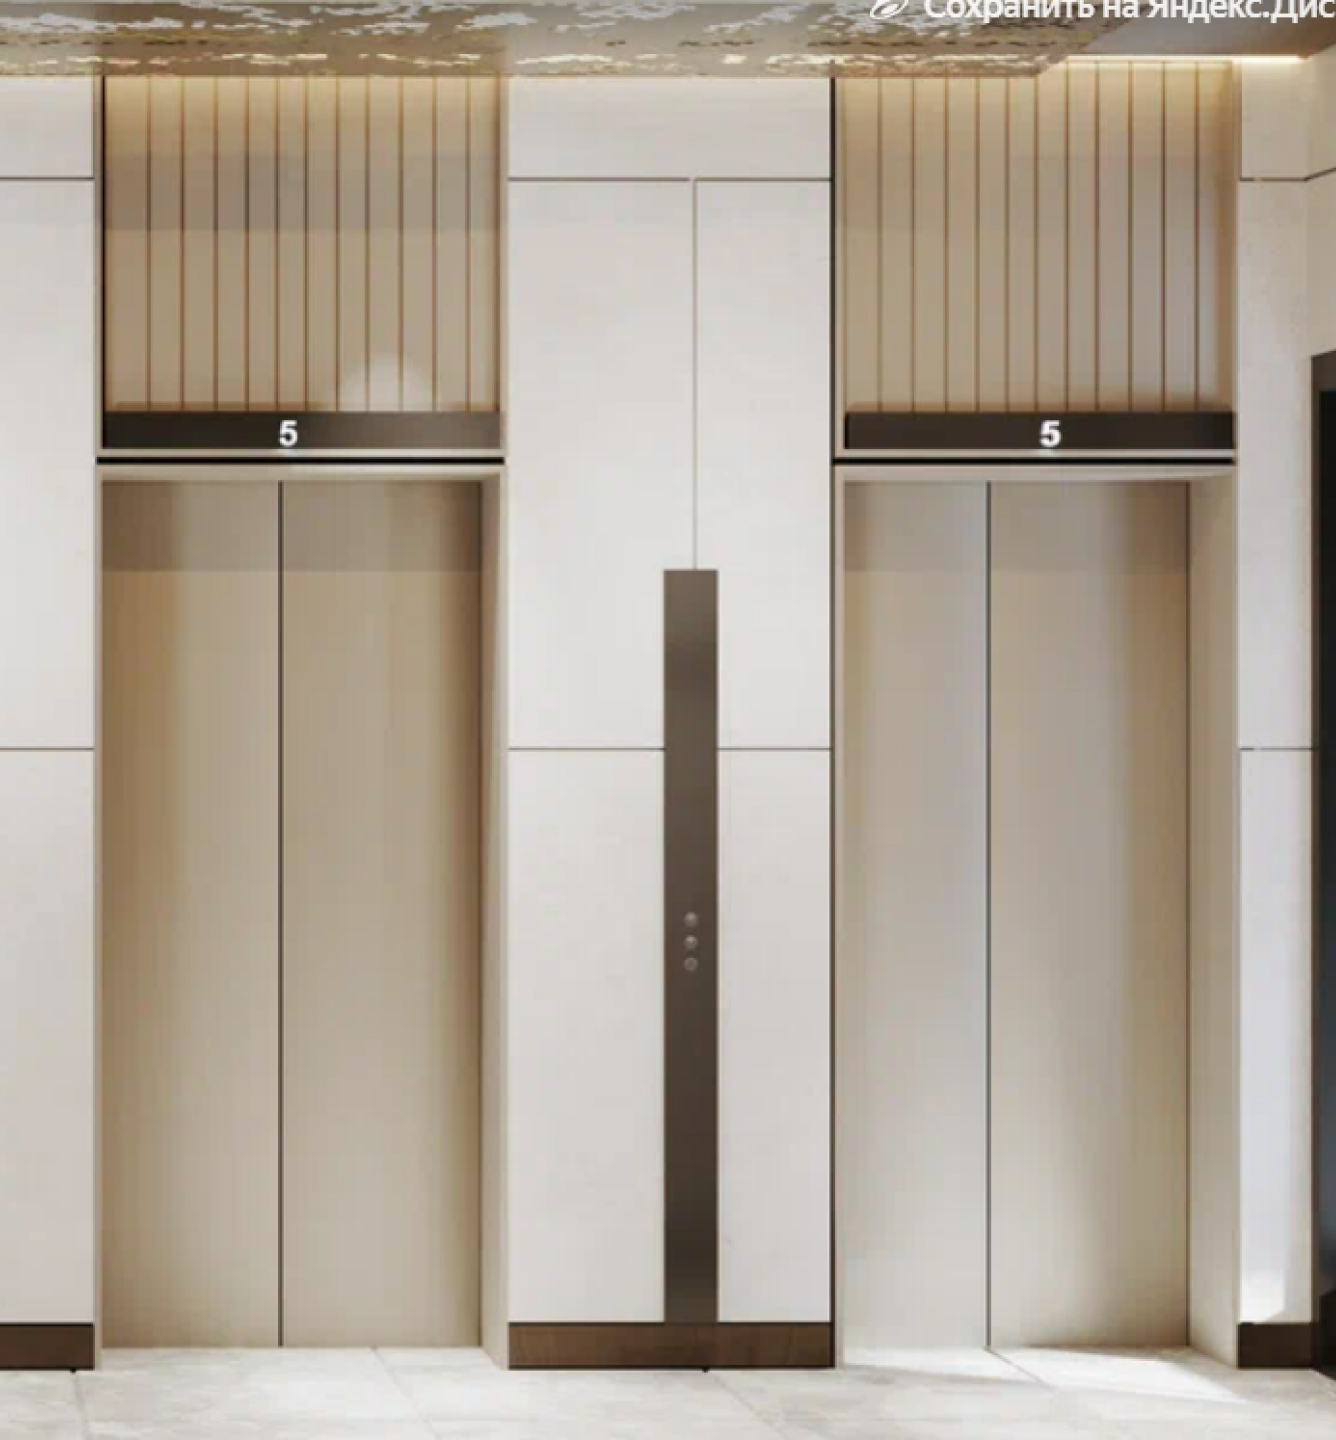 Премиальные лифты